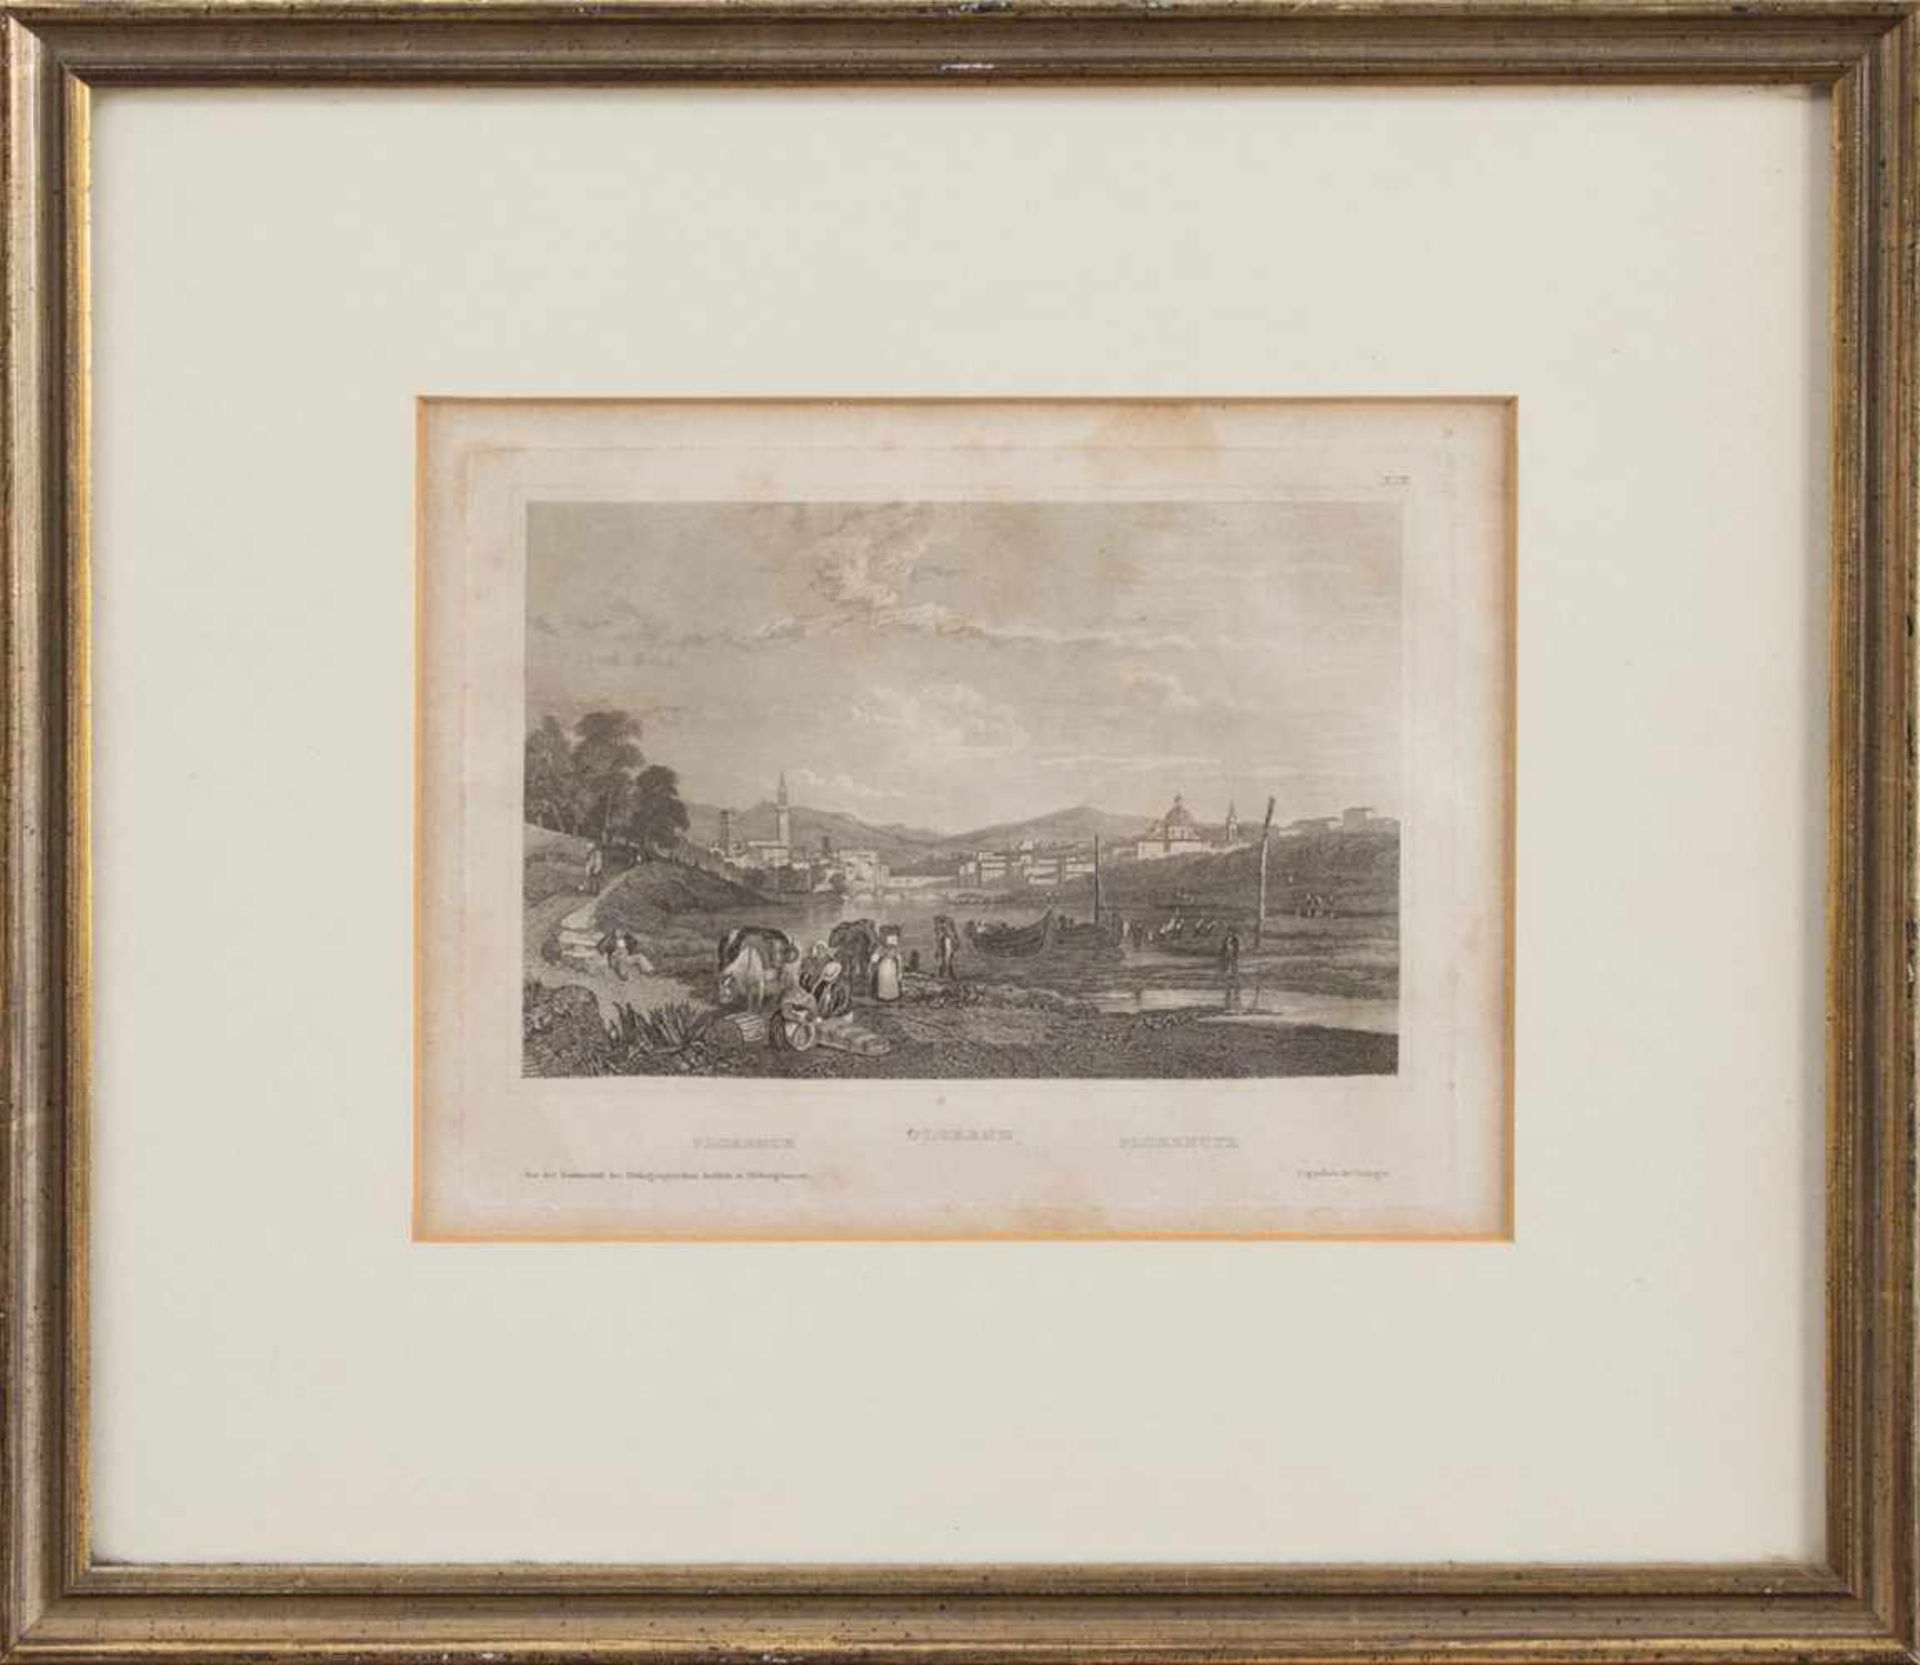 Unbekannt(Stahlstecher des 19. Jh.)FlorenzStahlstich um 1850, 10 x 14,5 cm, gerahmt, verlegt in d.